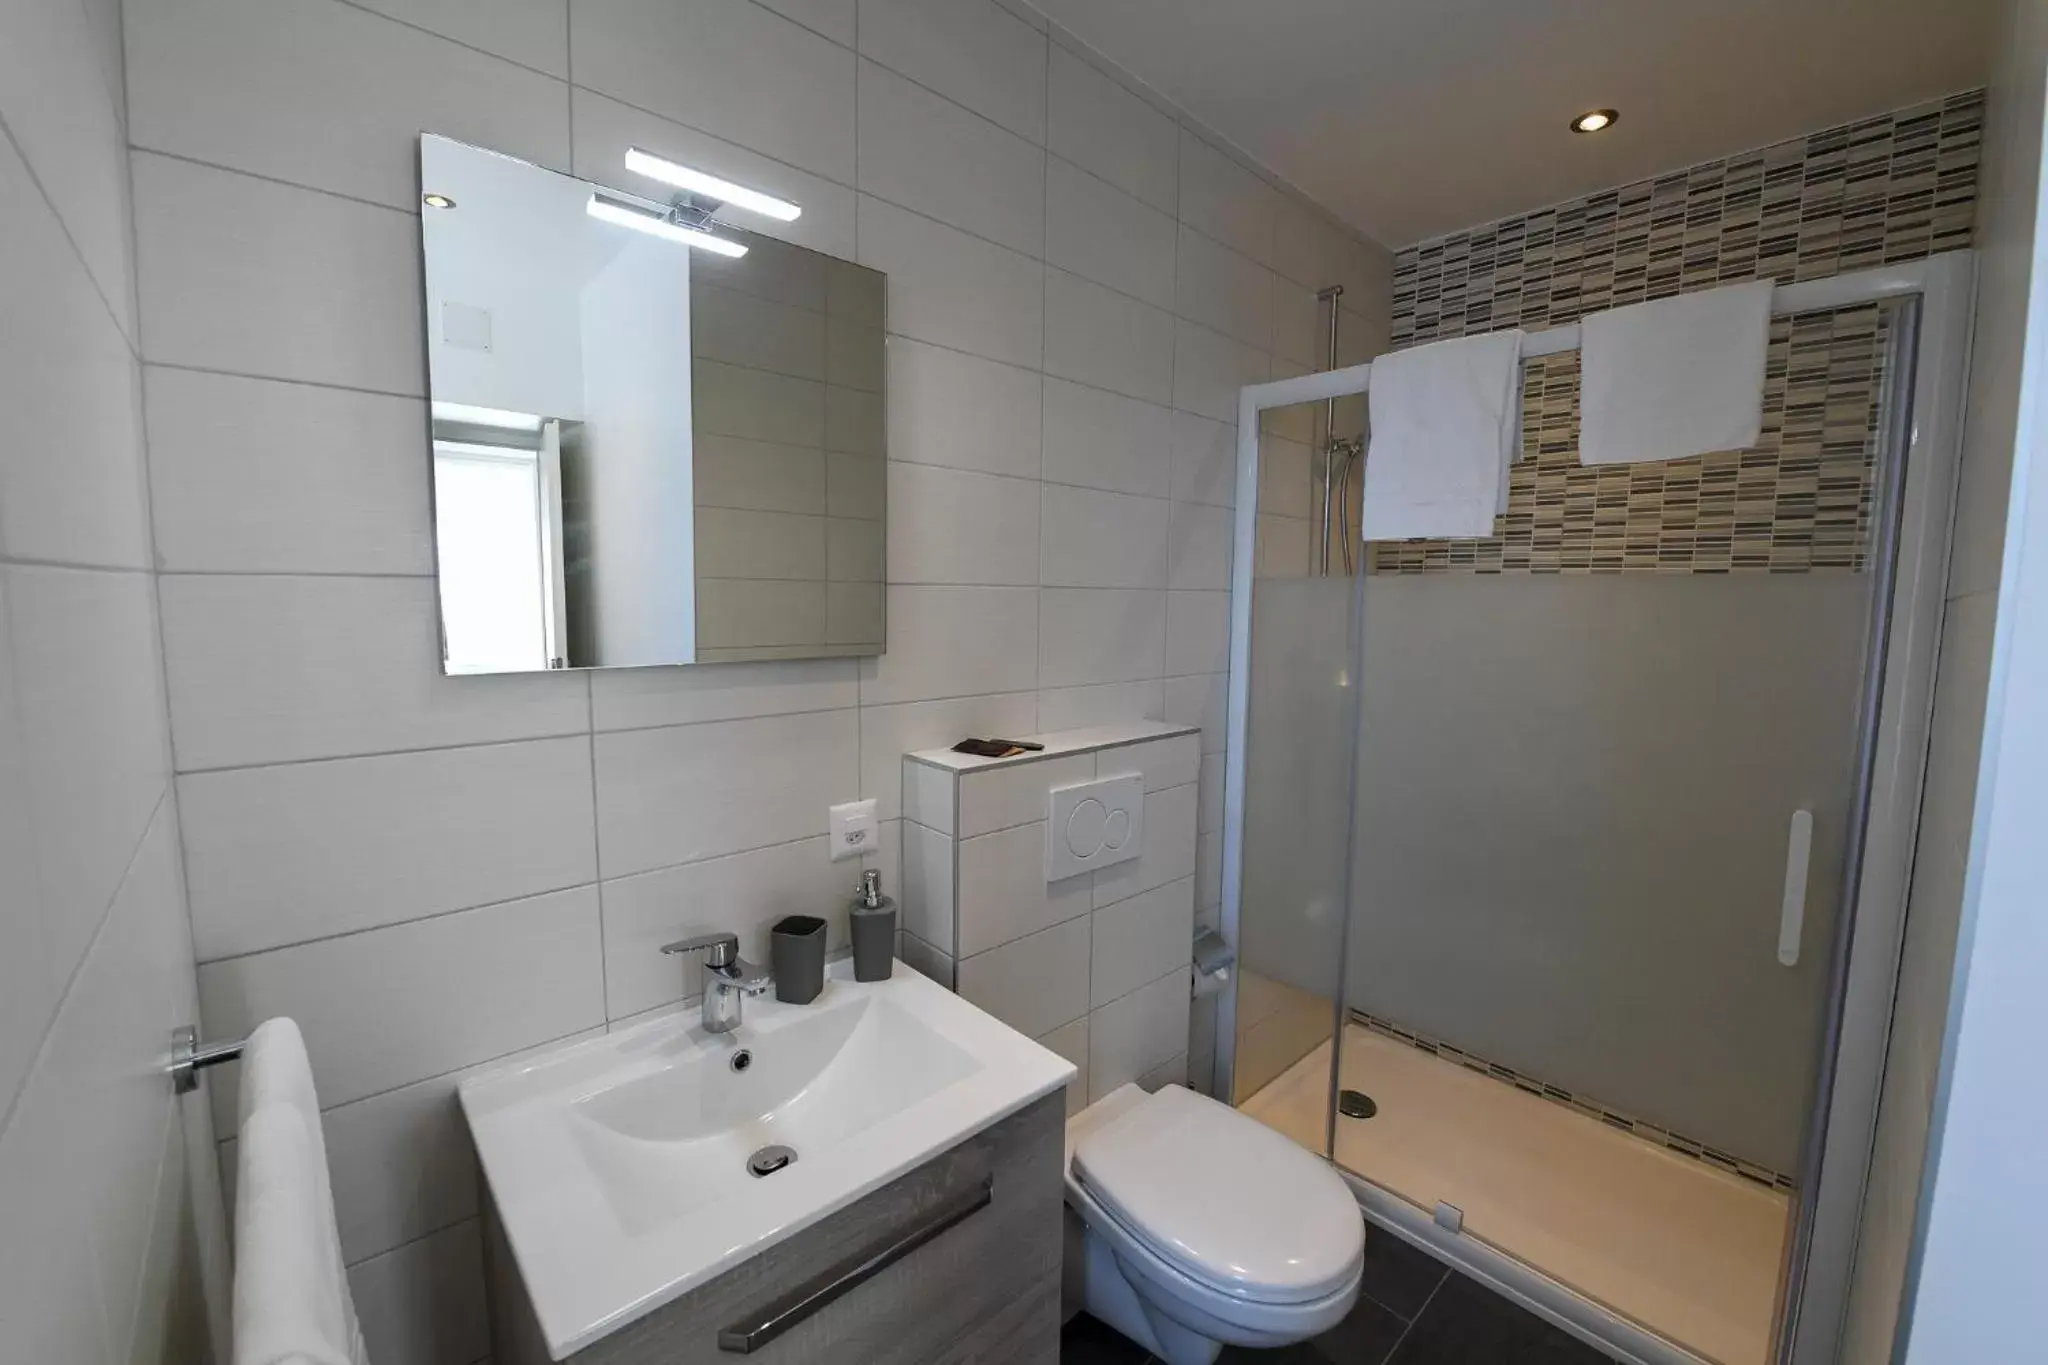 Bathroom in Hotel de France